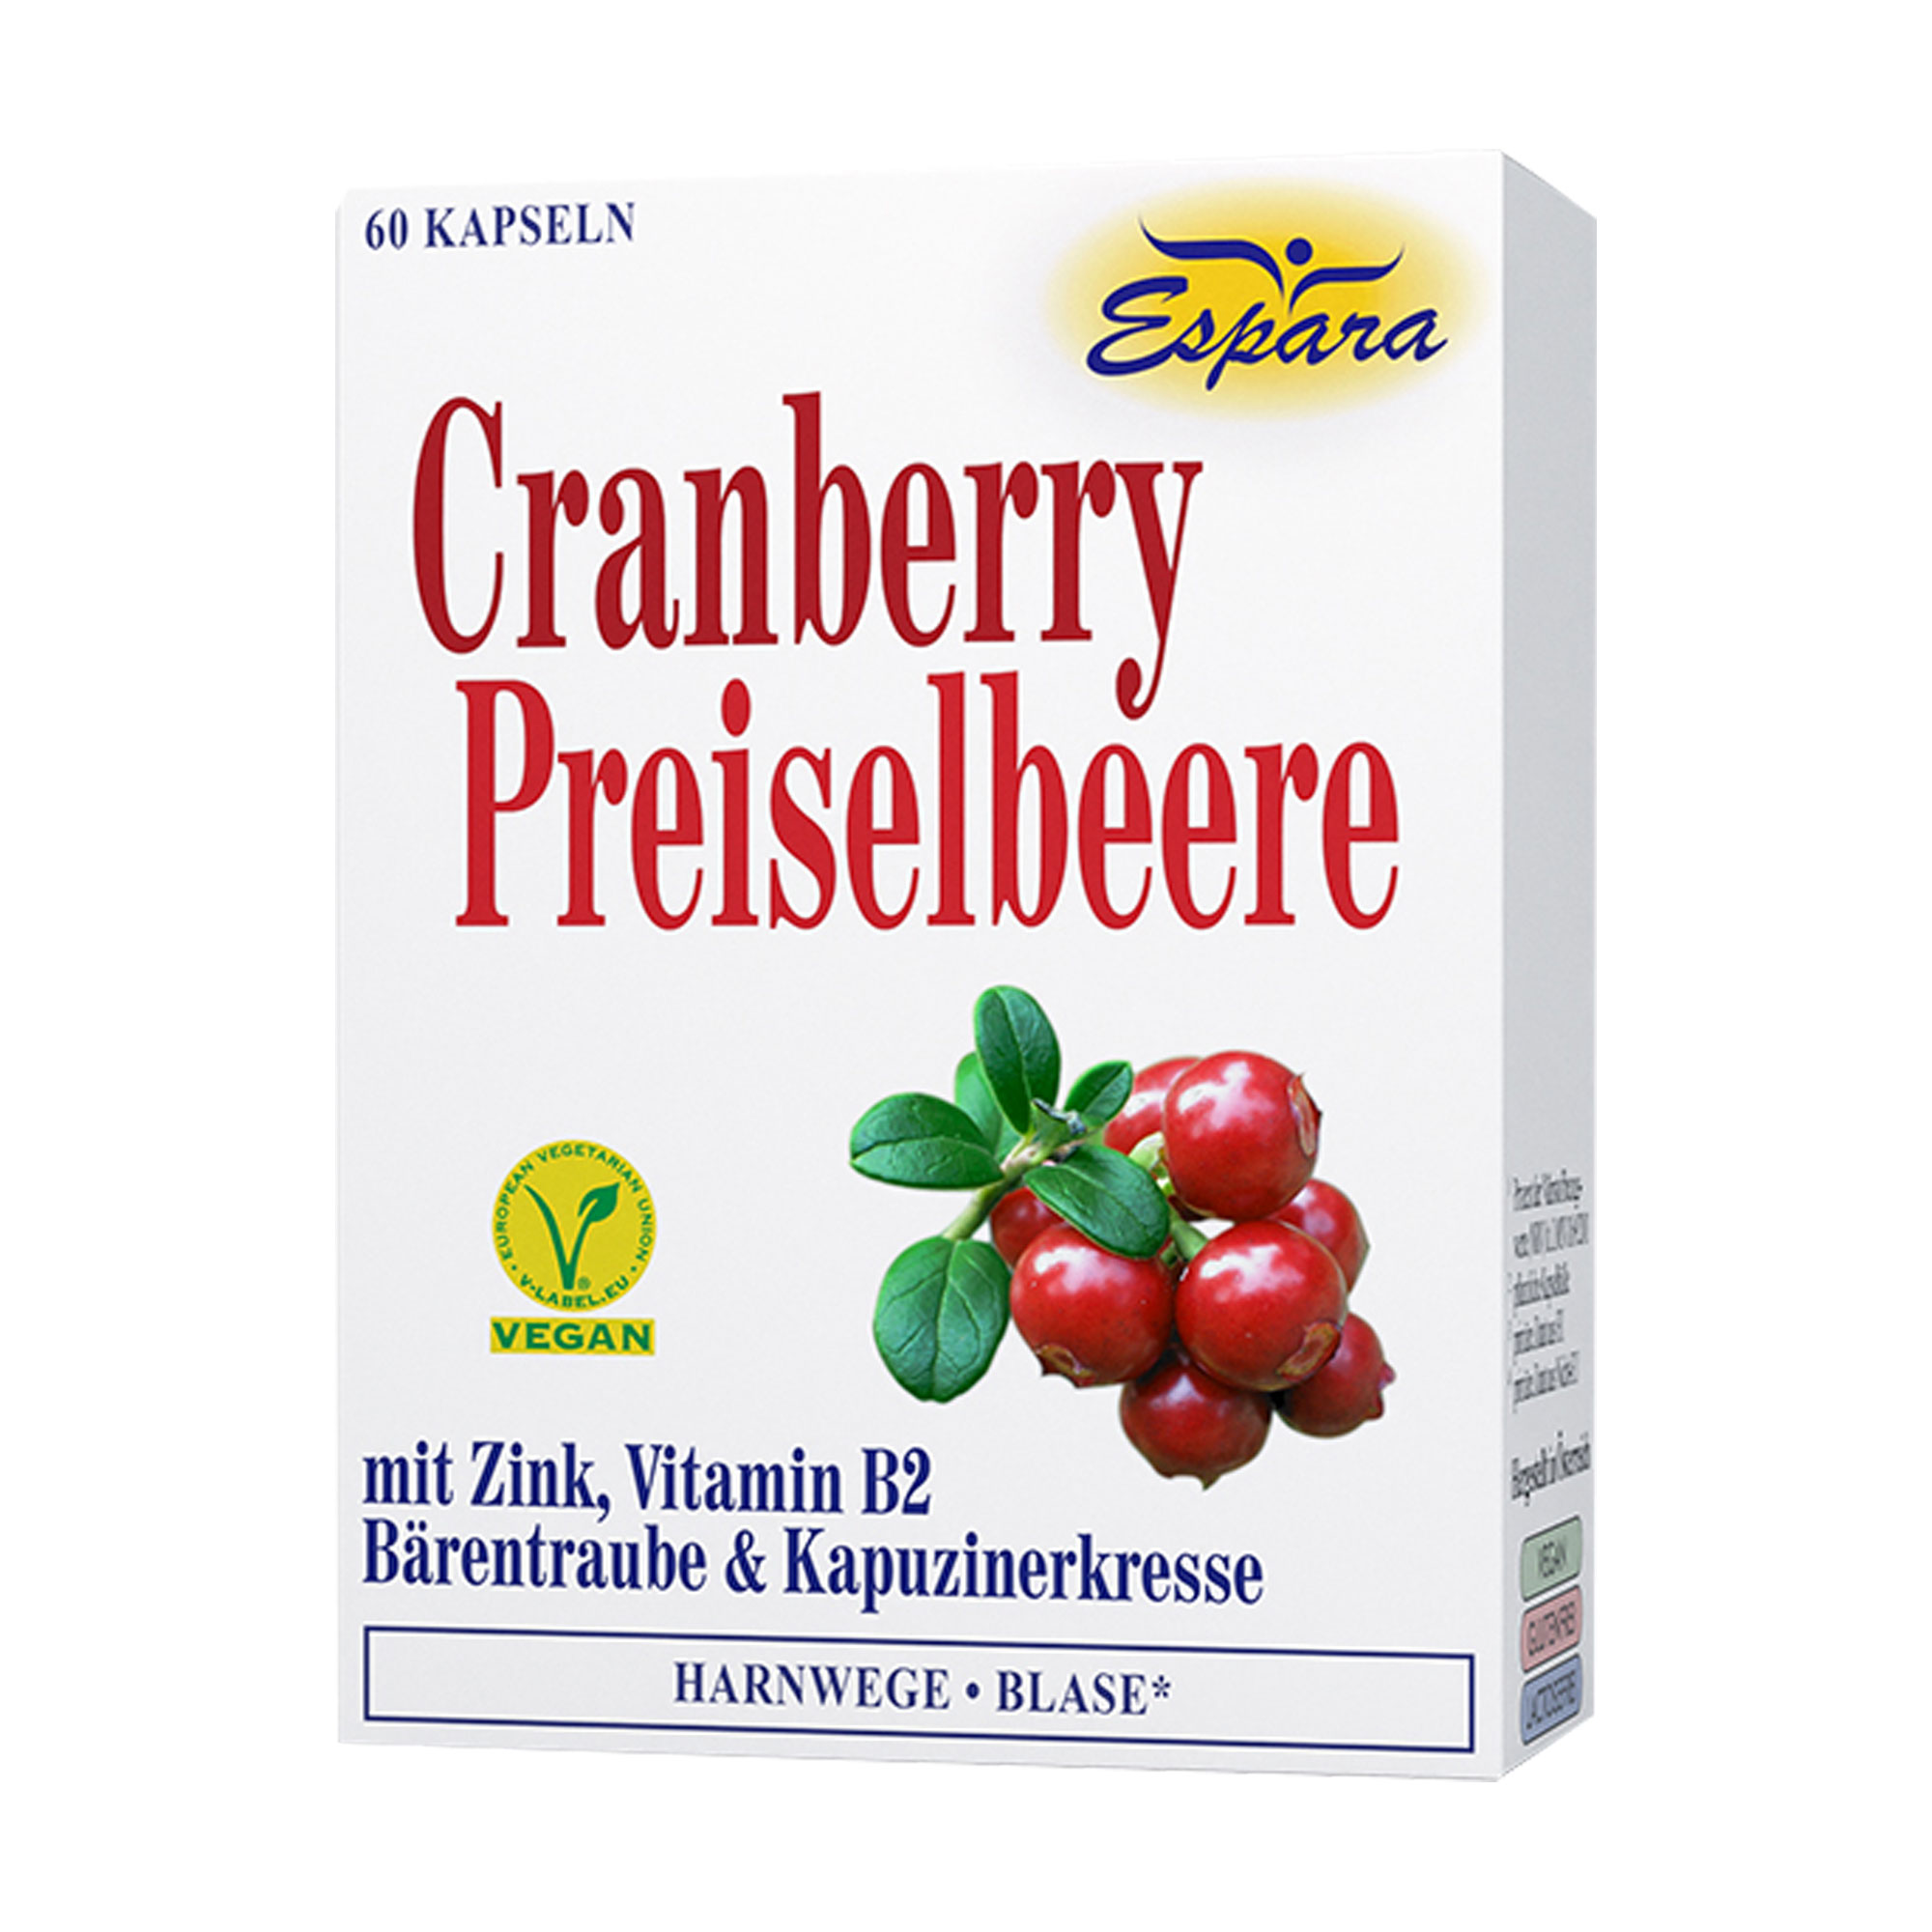 Nahrungsergänzungsmittel mit Vitamin B2 und dem Mineralstoff Zink in einer Basis aus Cranberry, Preiselbeere, Bärentraube und Kapuzinerkresse.